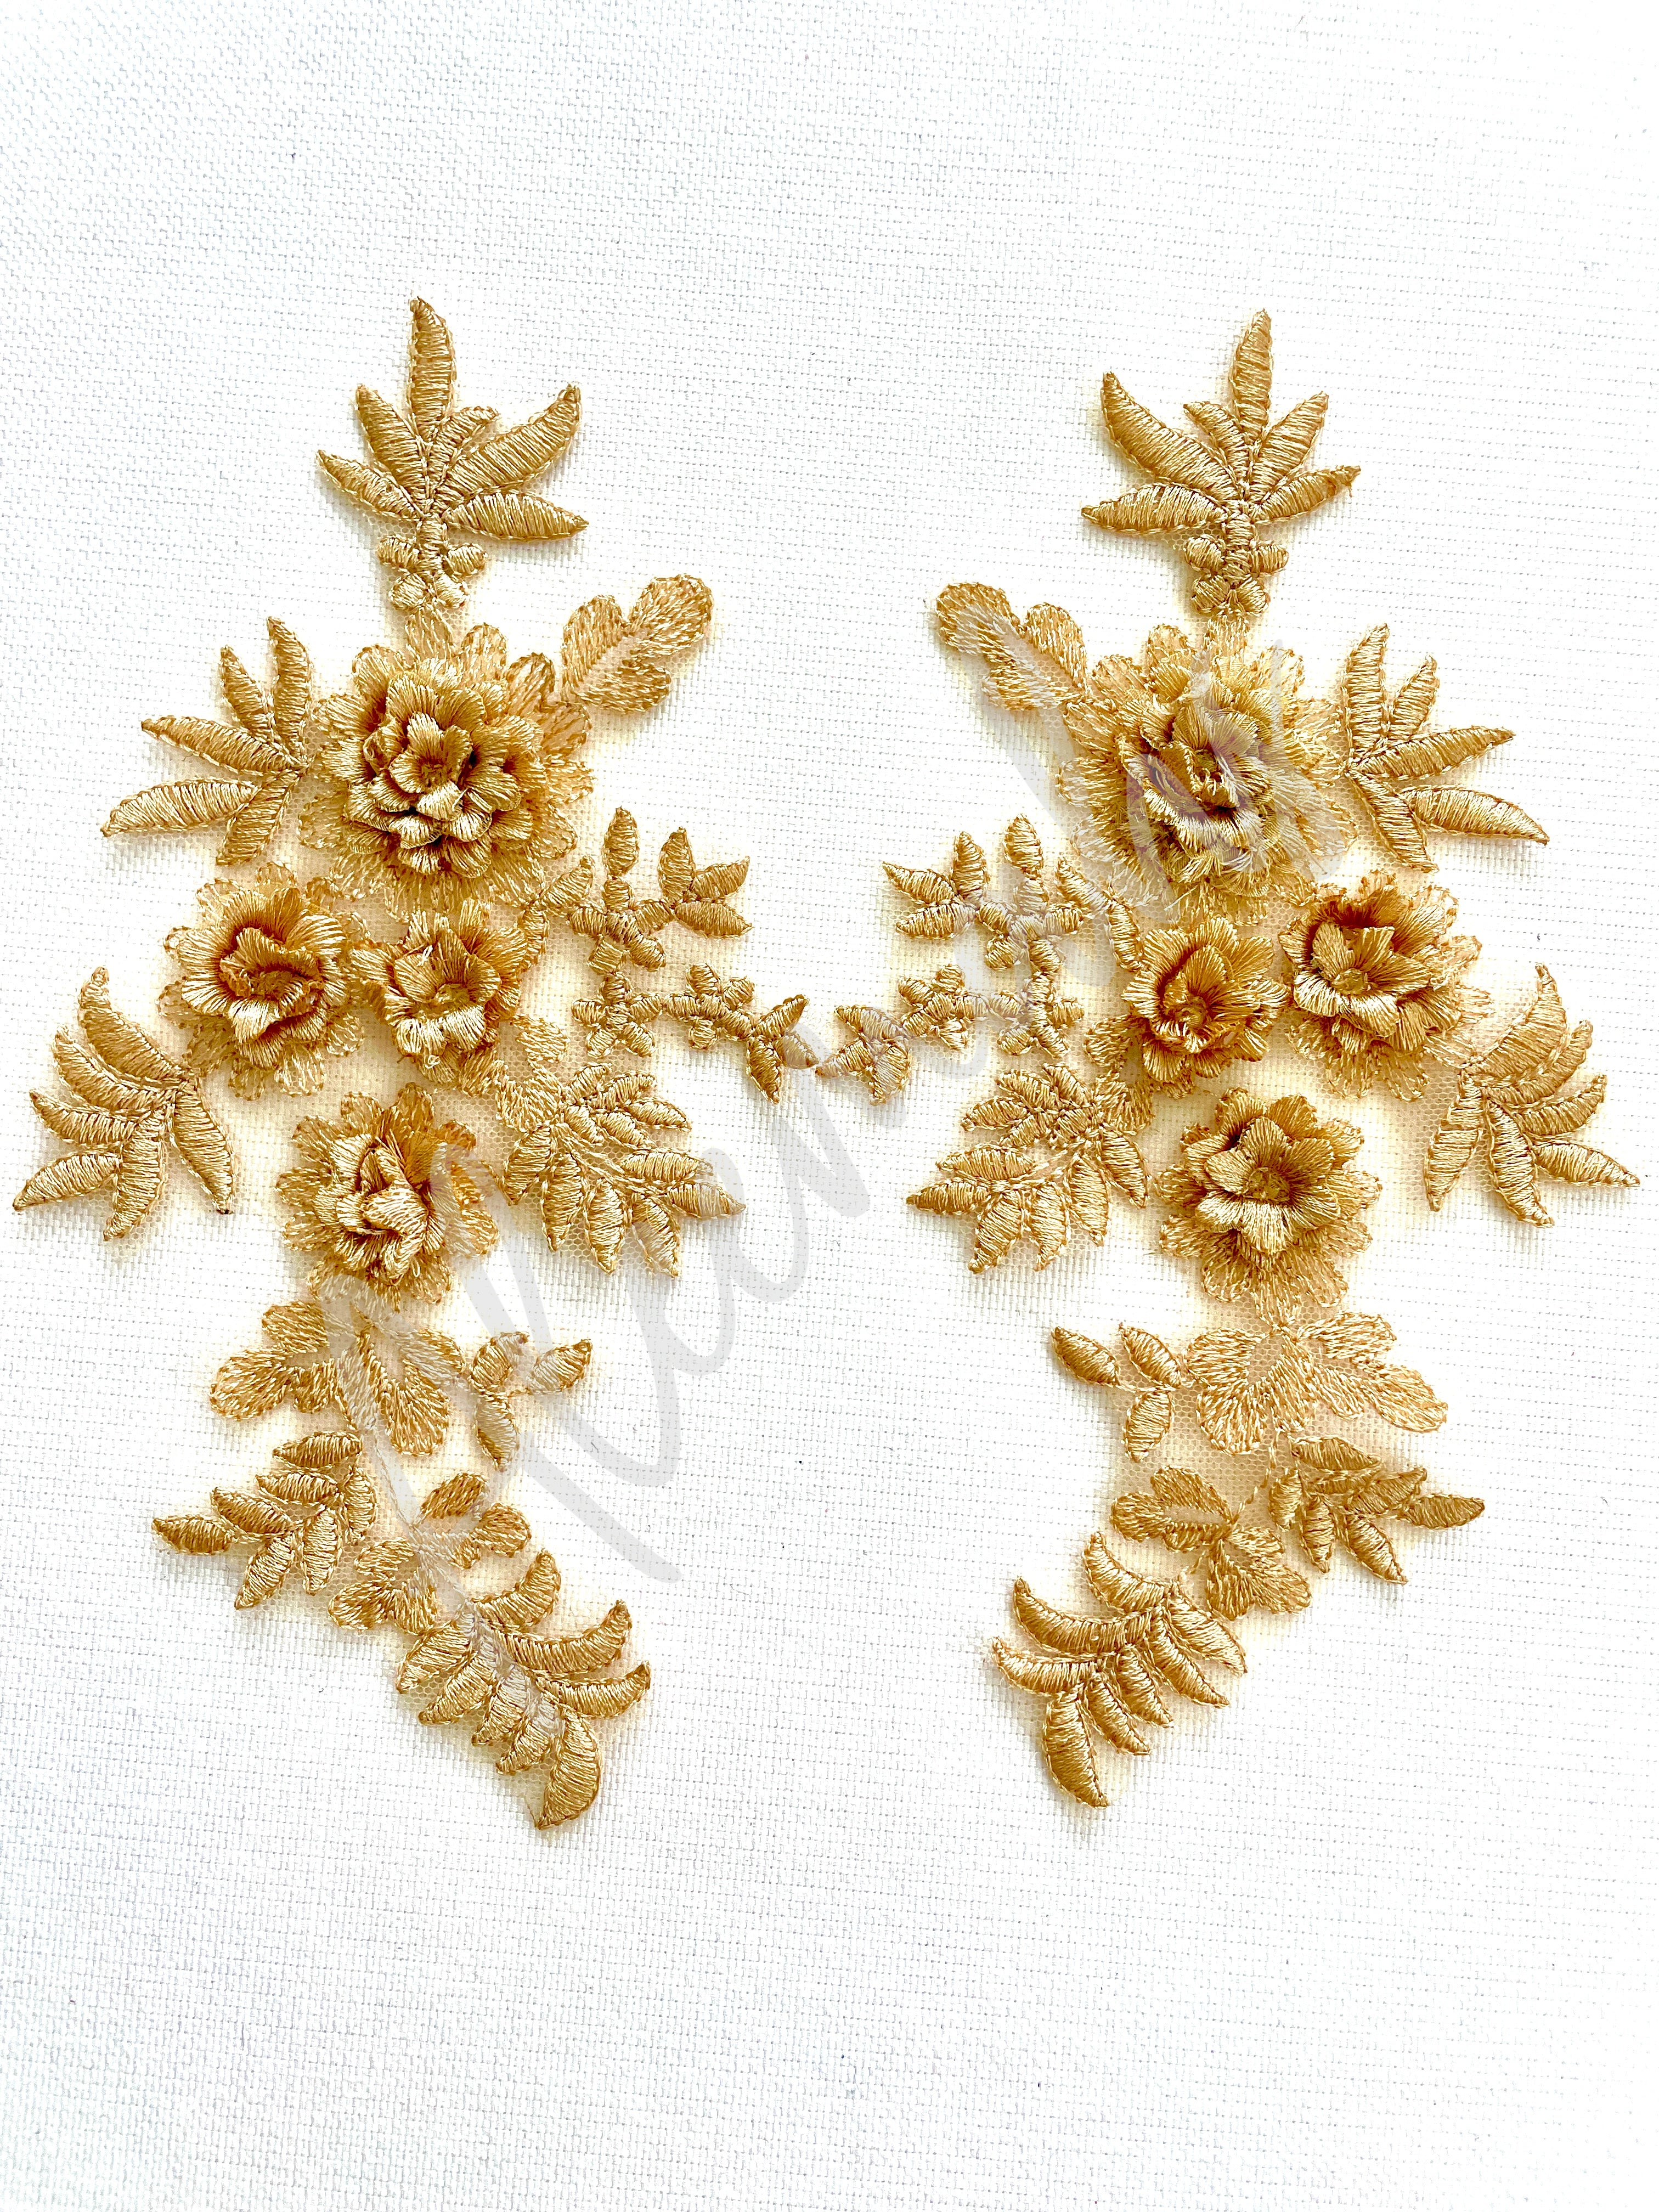 LA-033: 3D floral lace applique pair: Golden beige